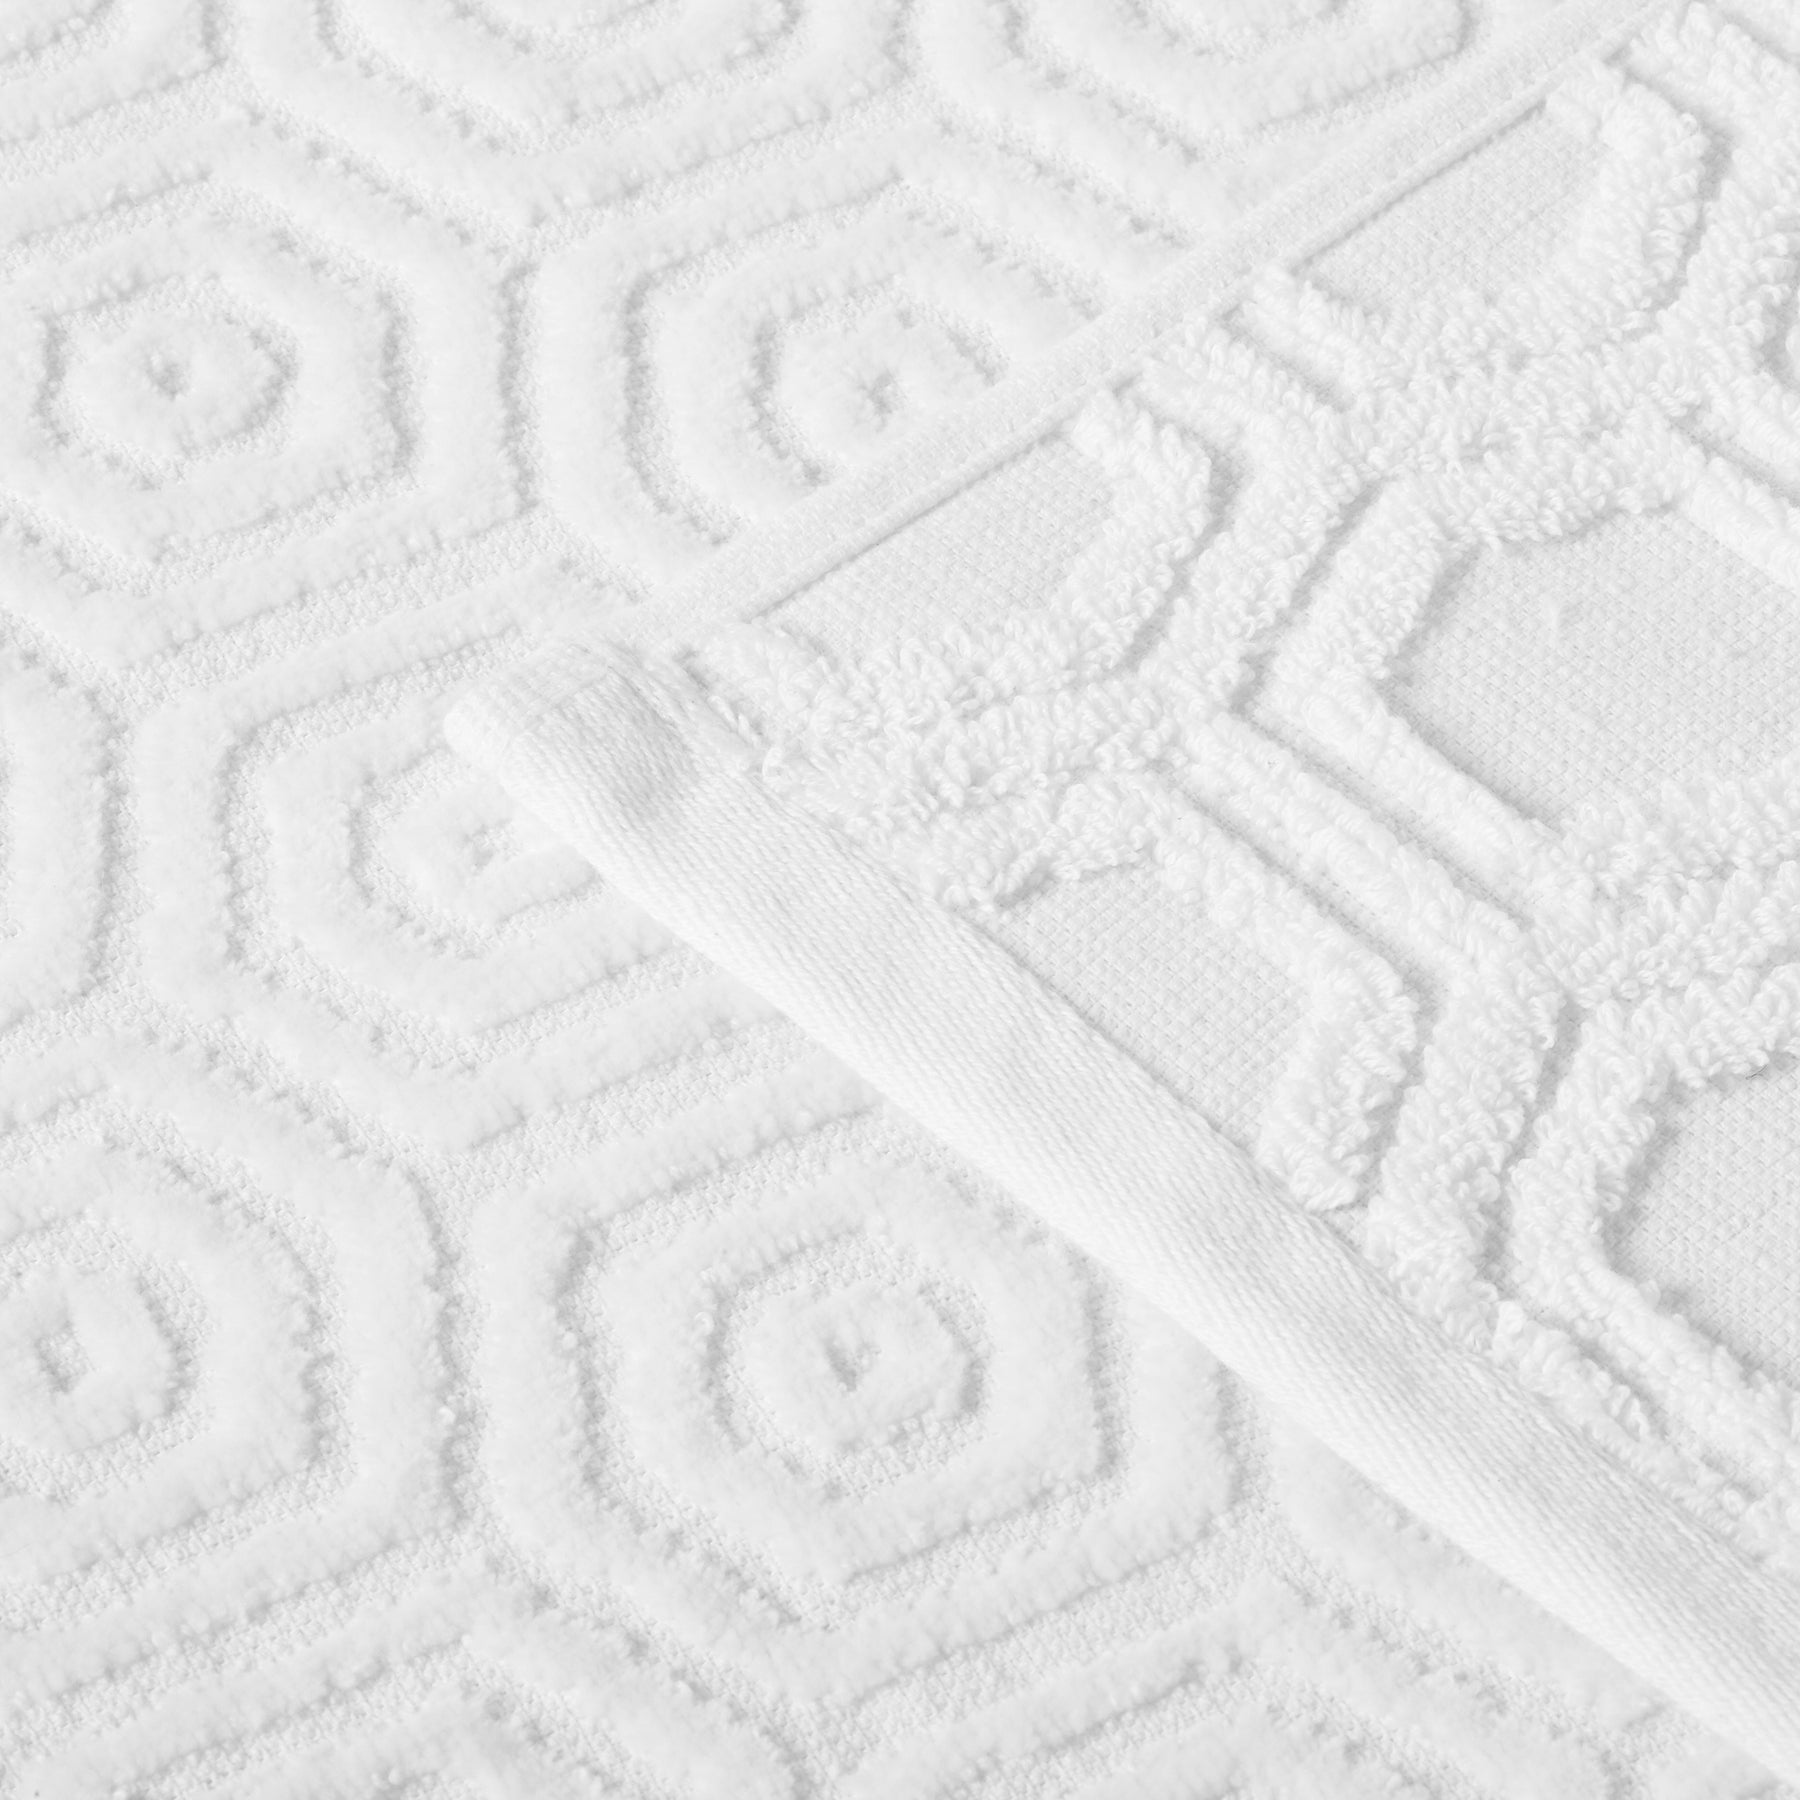 Honeycomb Jacquard 12-Piece Cotton Velour Bath Towel Set - White